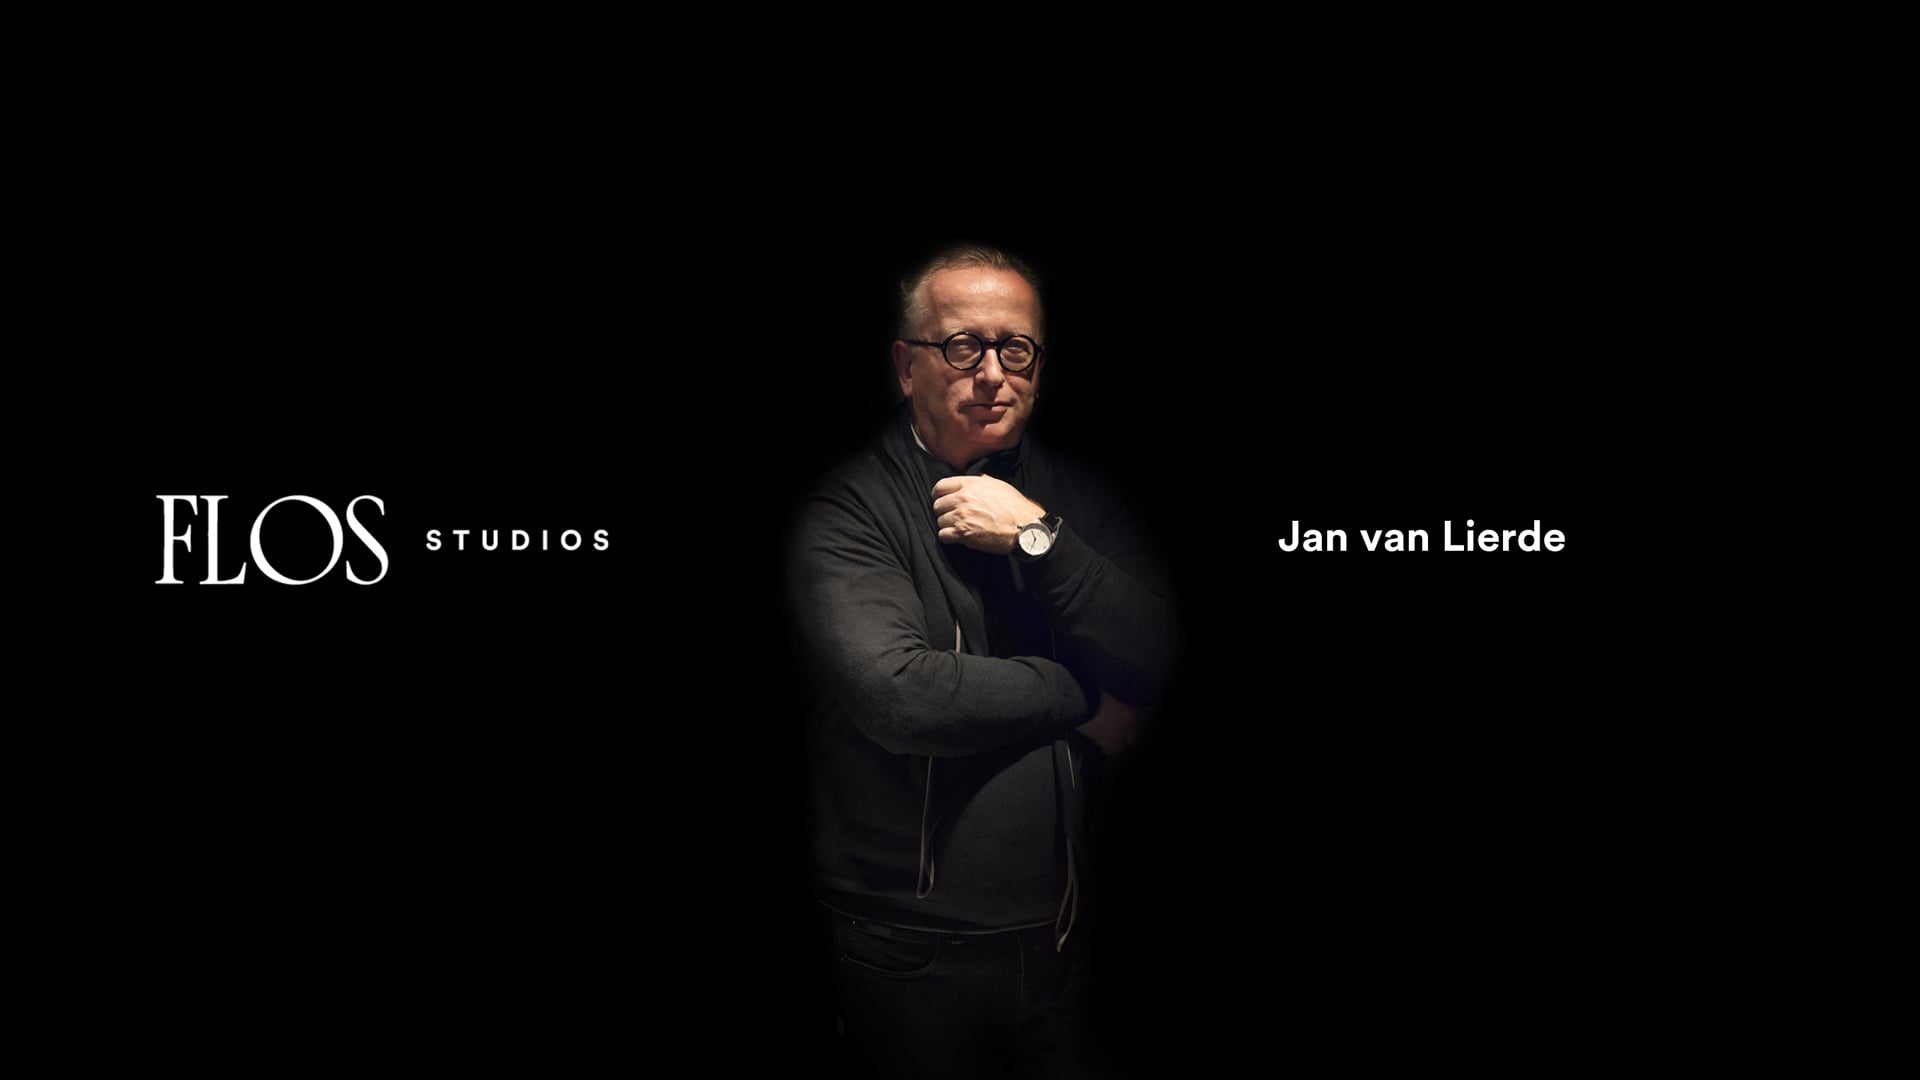 Flos Studios | Jan van Lierde